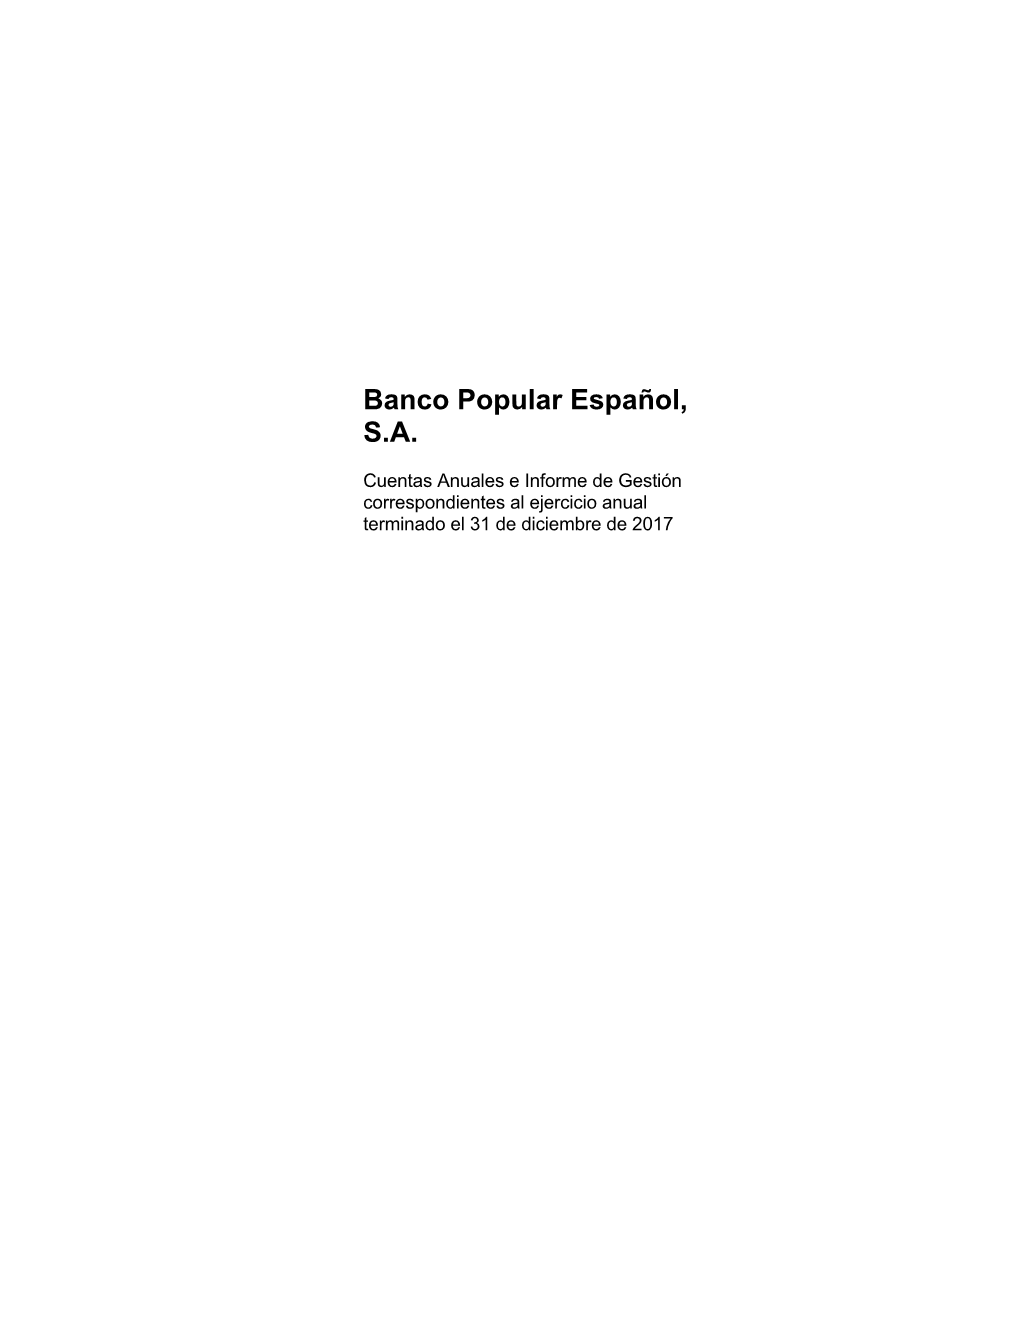 Banco Popular Español, SA